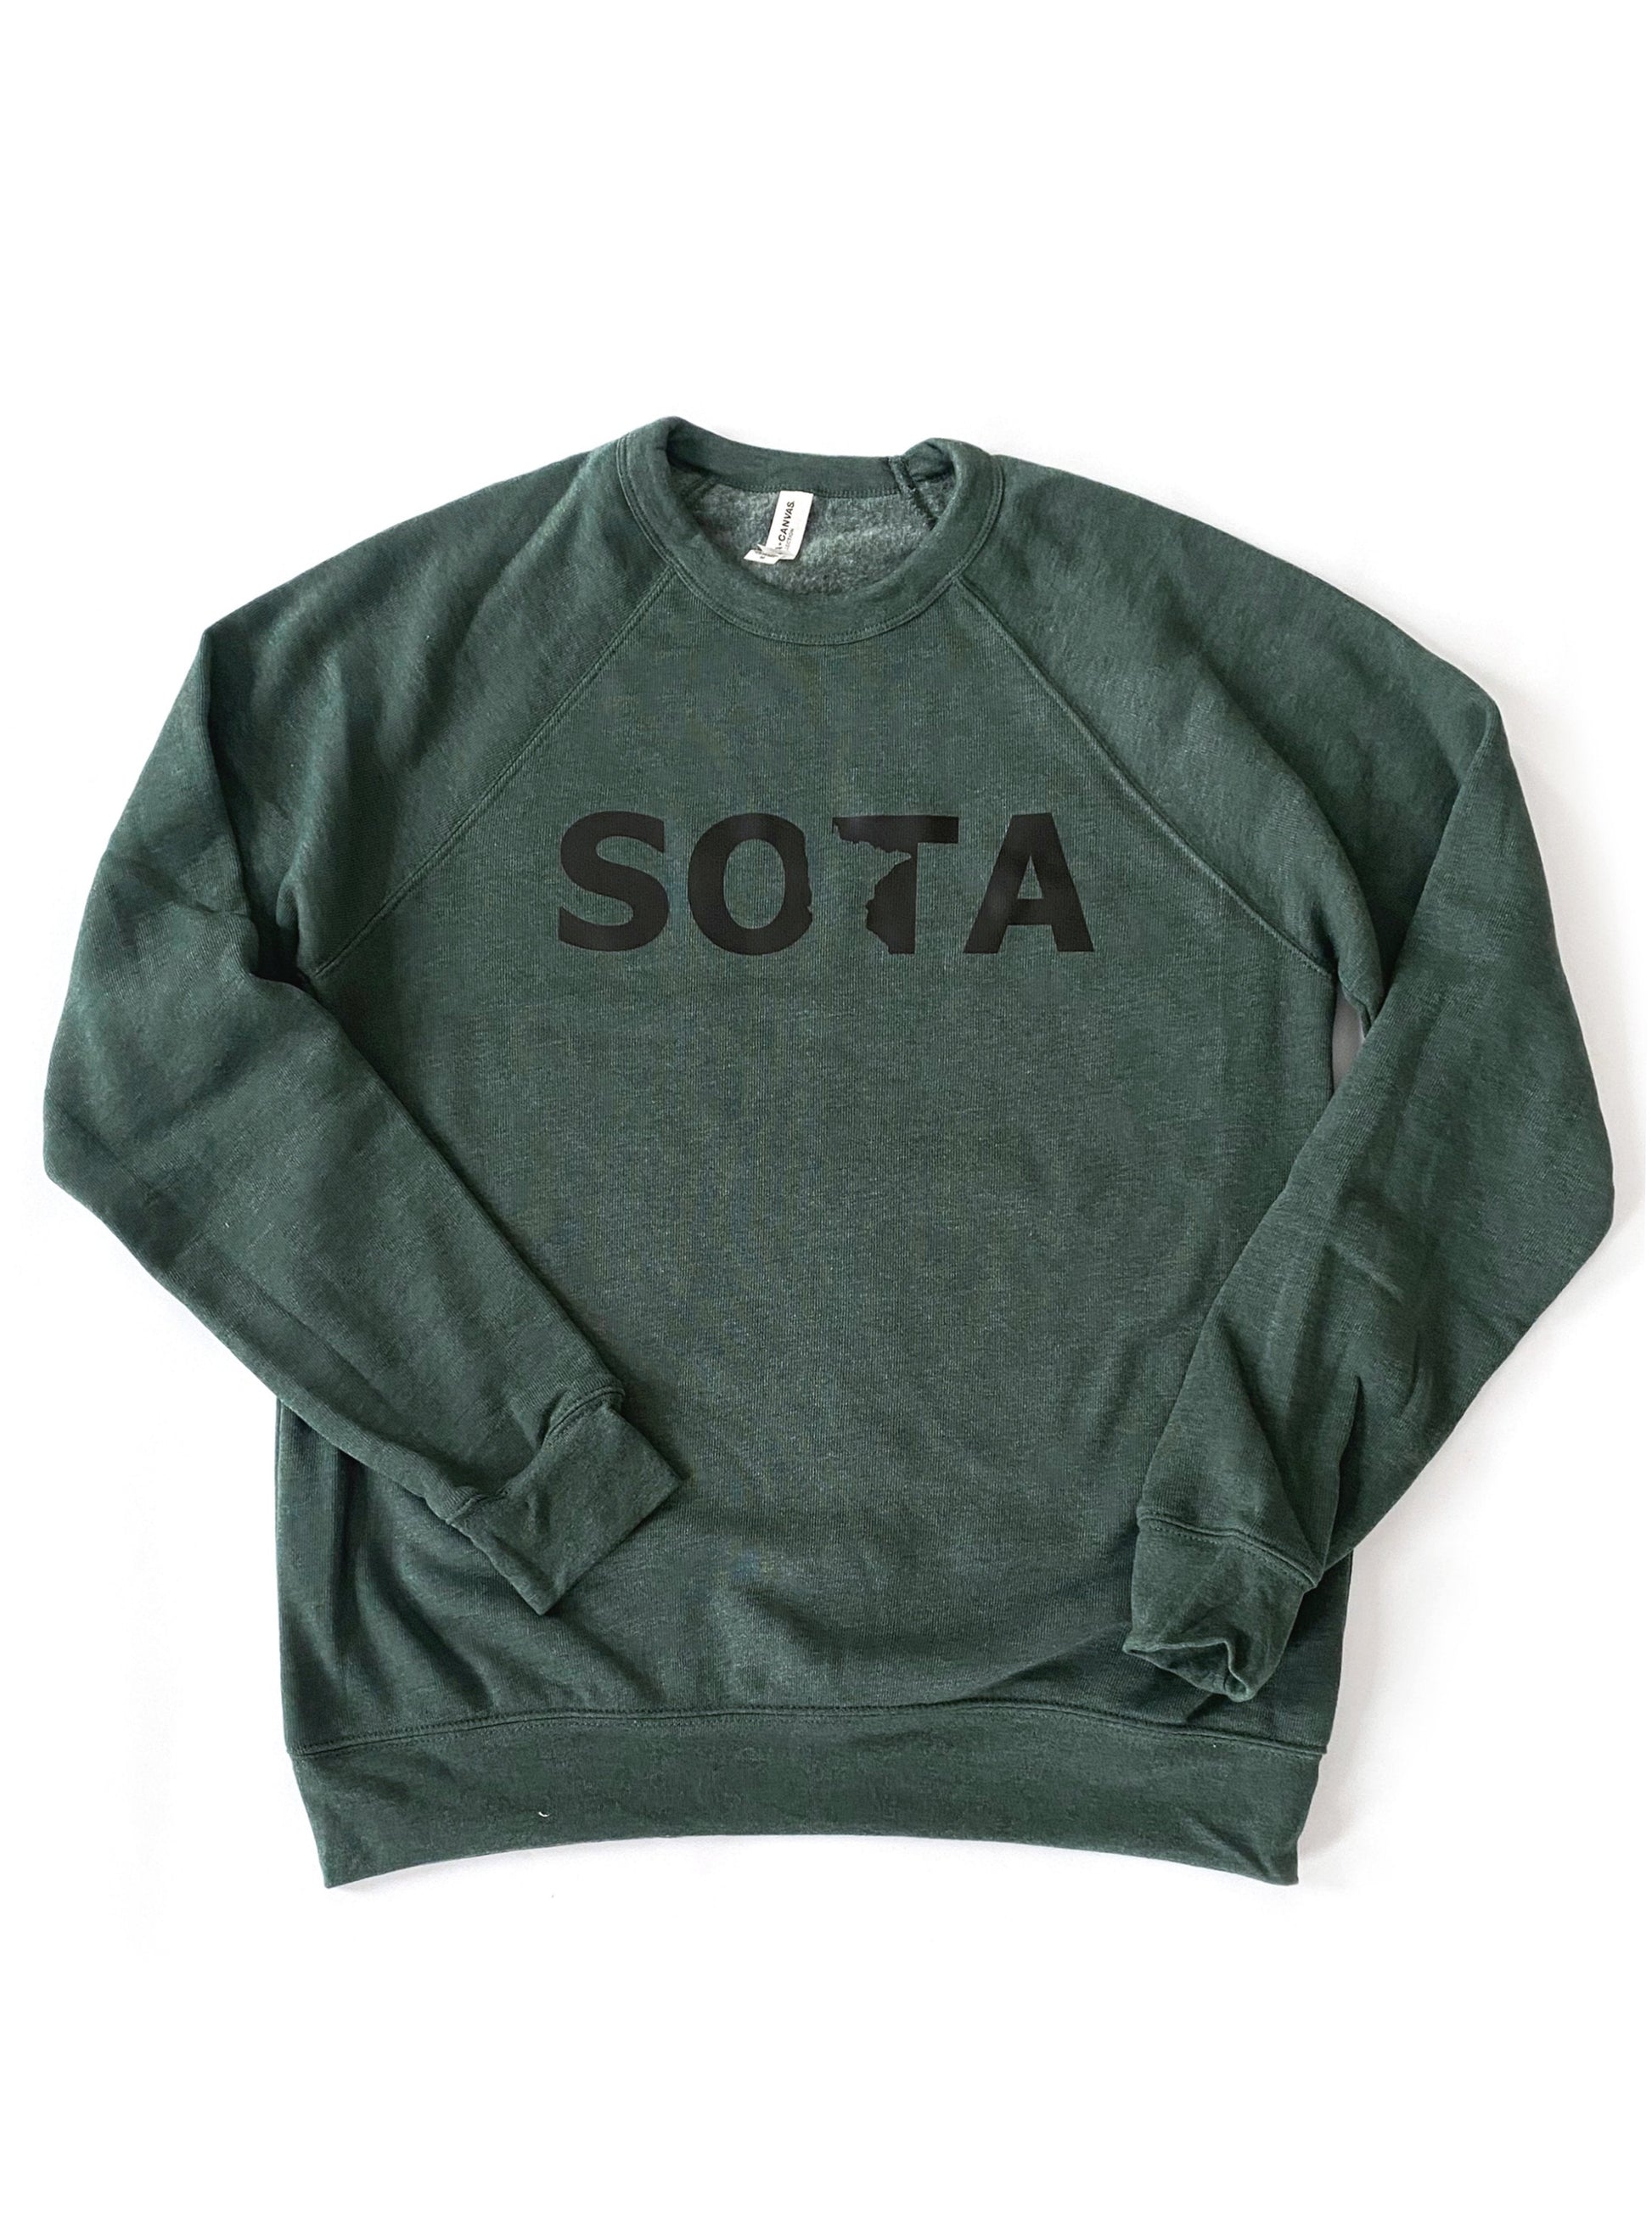 Hunter Green Sota Crew Sweatshirt Tops